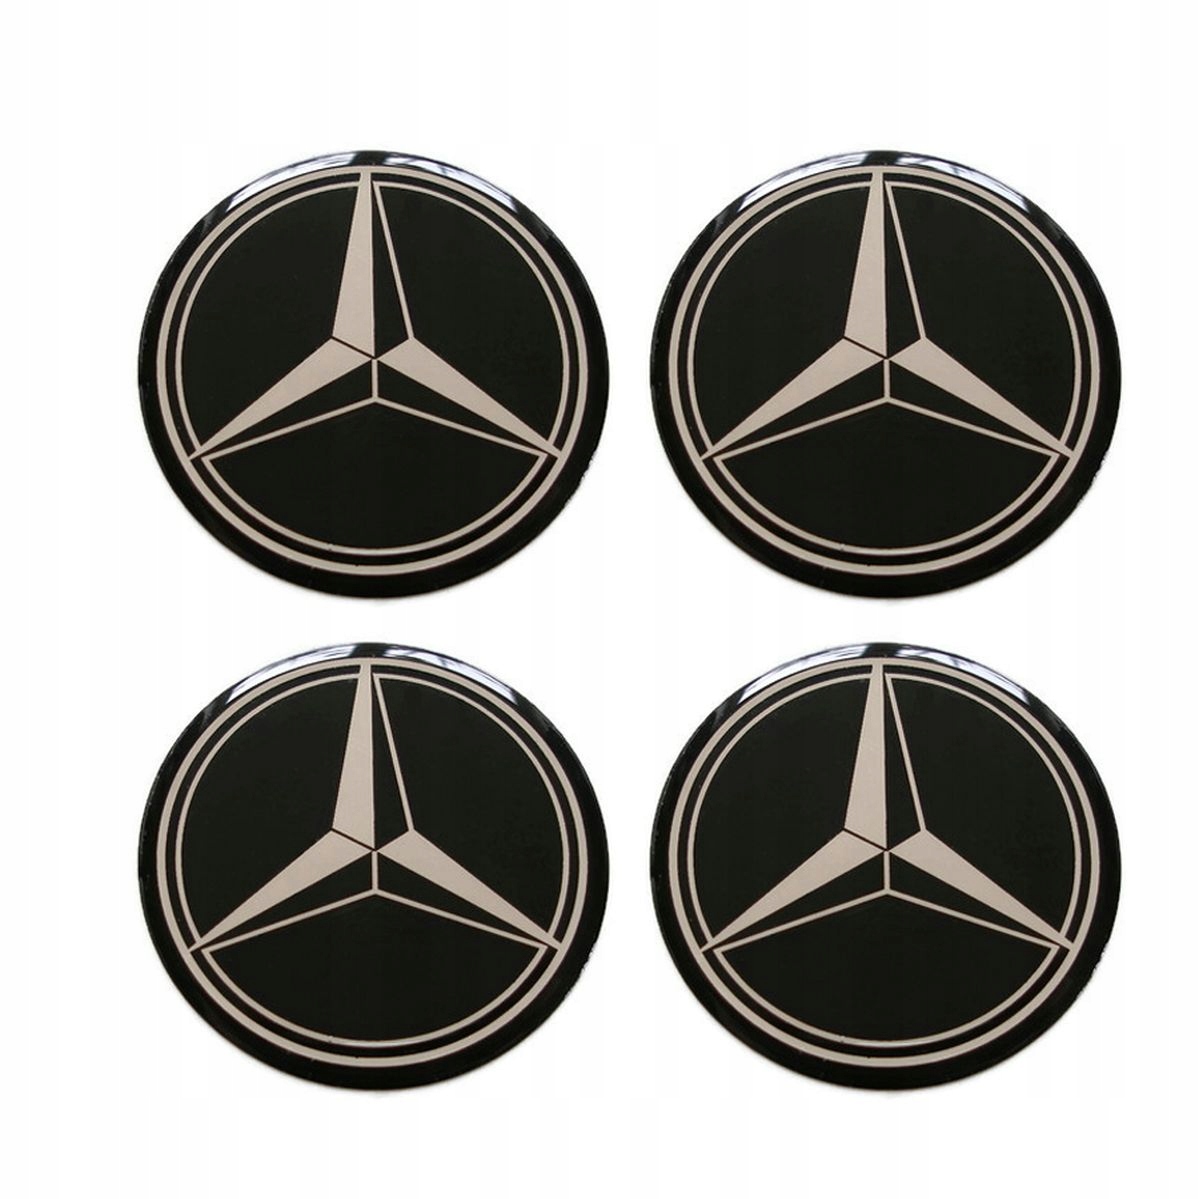 Значки мерседес спринтер. Мерседес лого e124. Mercedes Benz logo Спринтер наклейка. Мерседес на диски значок 70mm. Значки на Мерседес Бенц w140.